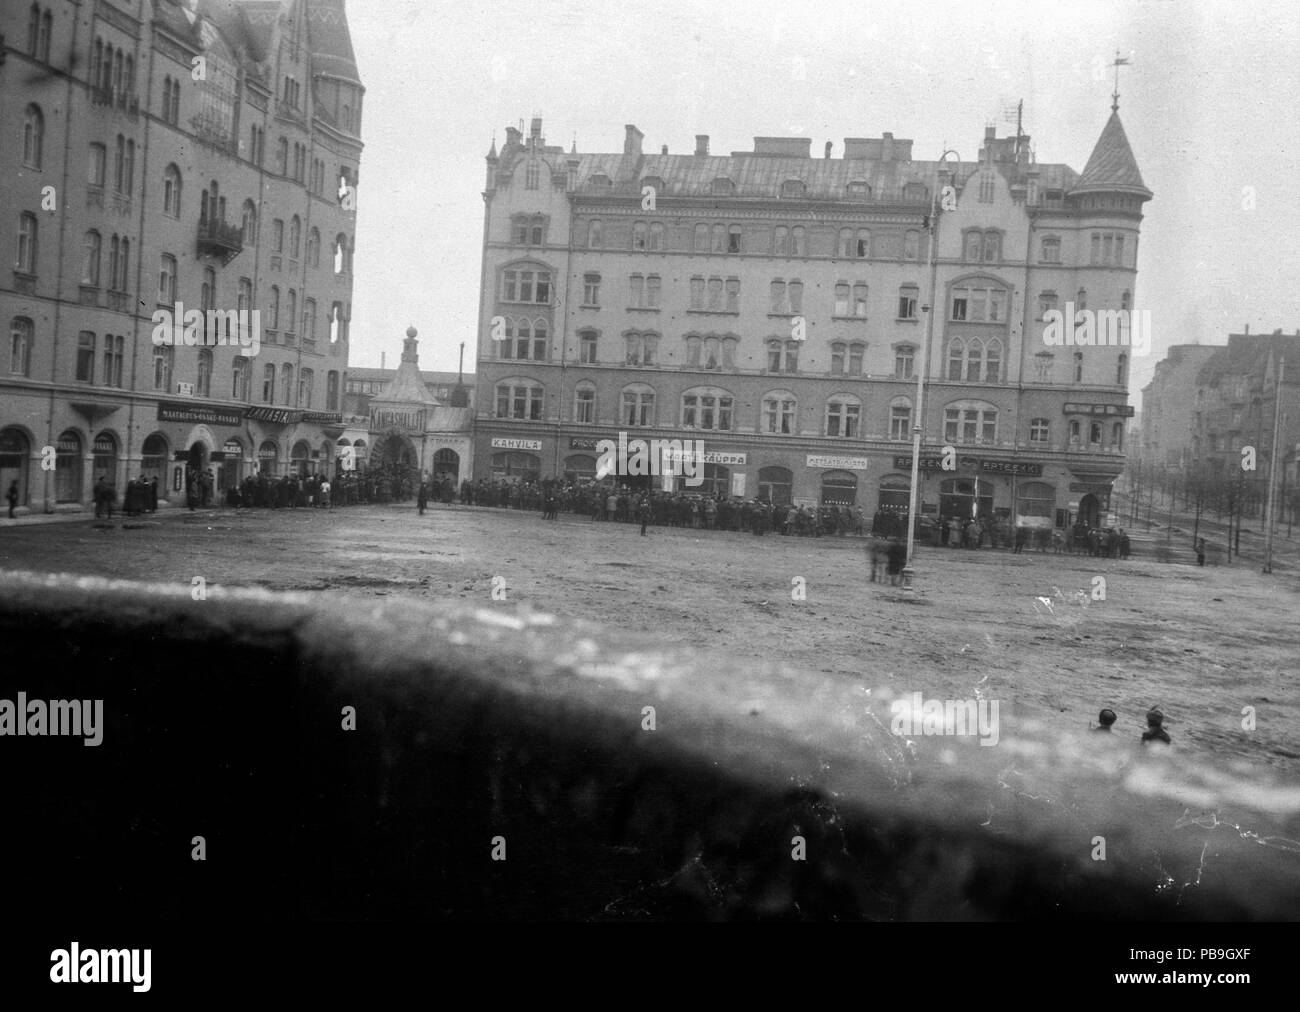 1599 Tampereen raatihuoneen puolustajat ovat antautuneet 5.4.1918 (26696840560) Stock Photo